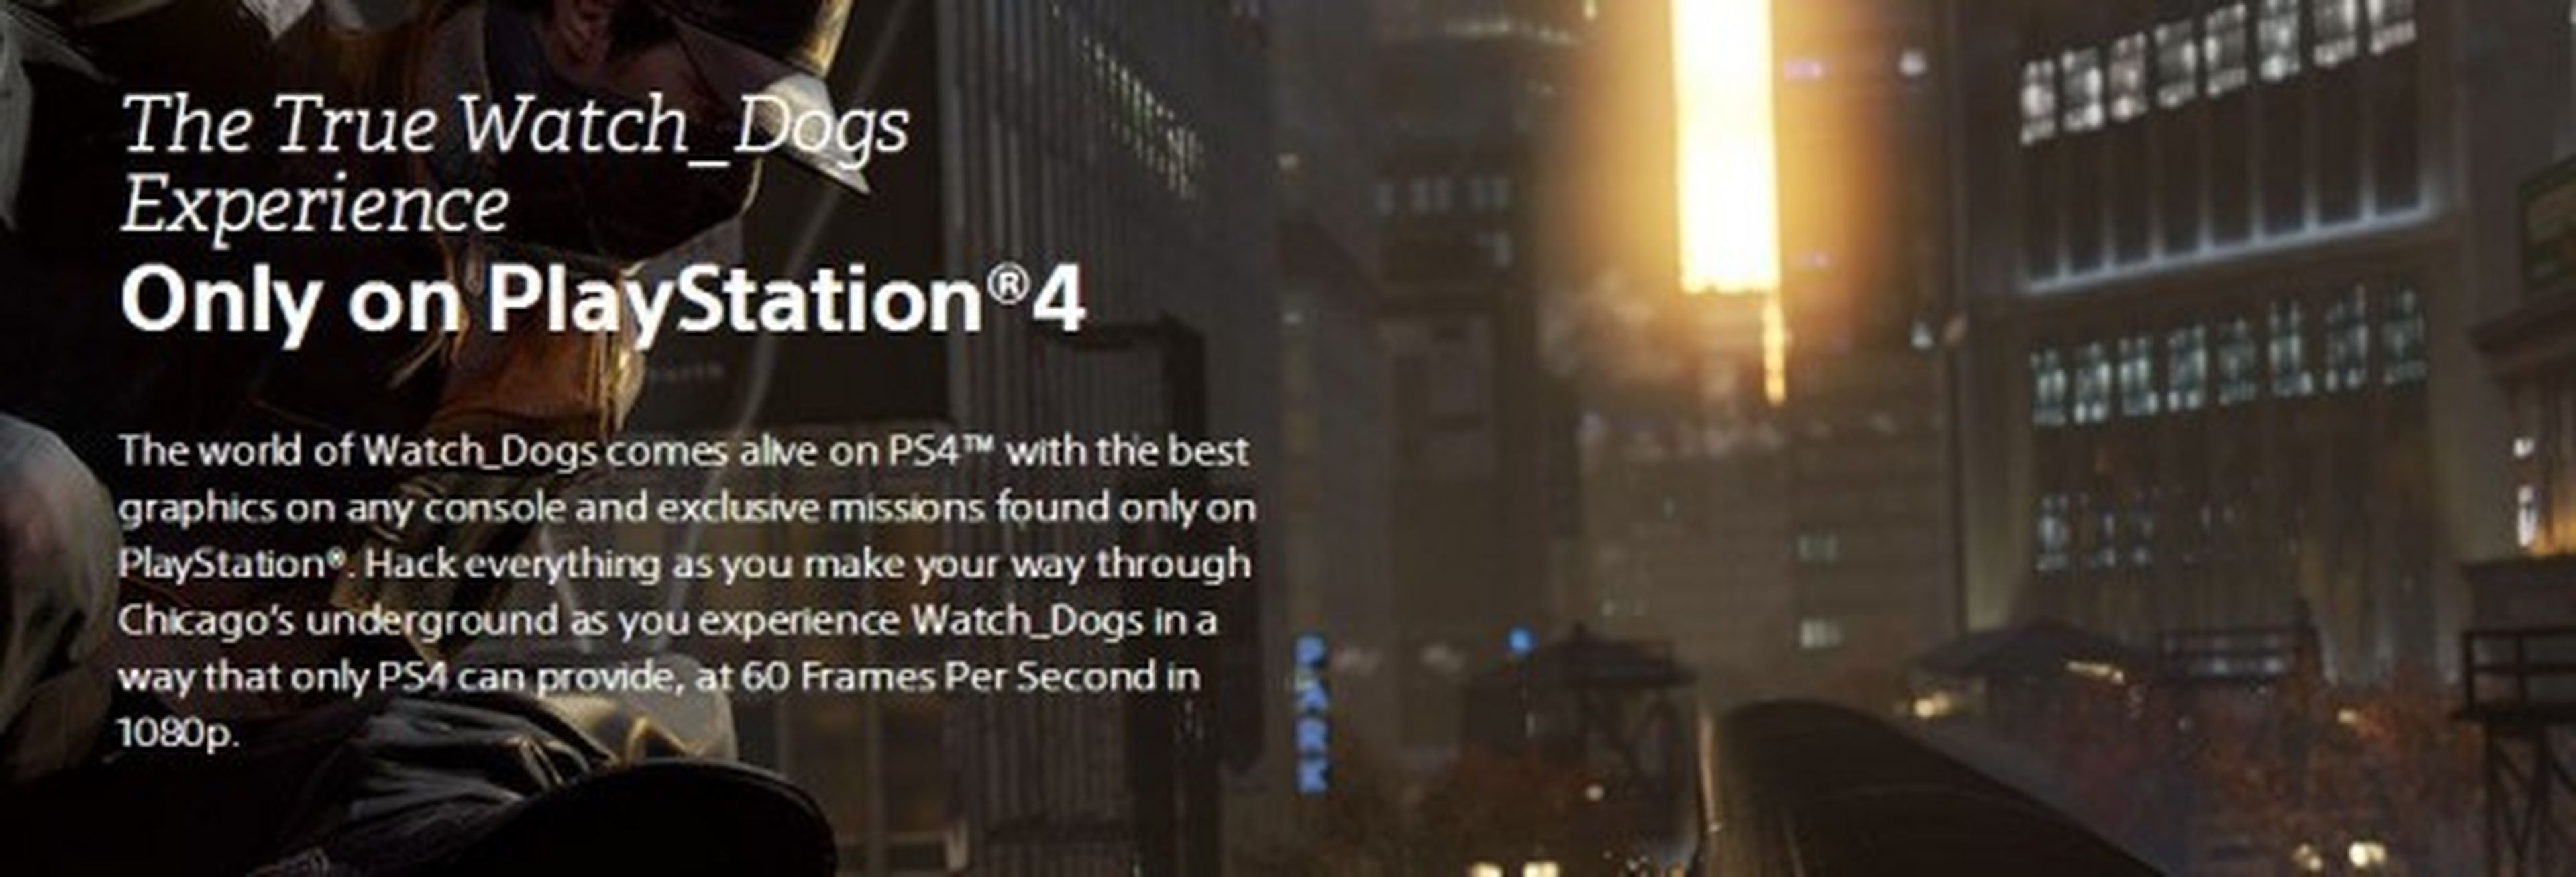 Confirmada la resolución y el frame rate de Watch Dogs en Playstation 4 y Xbox One